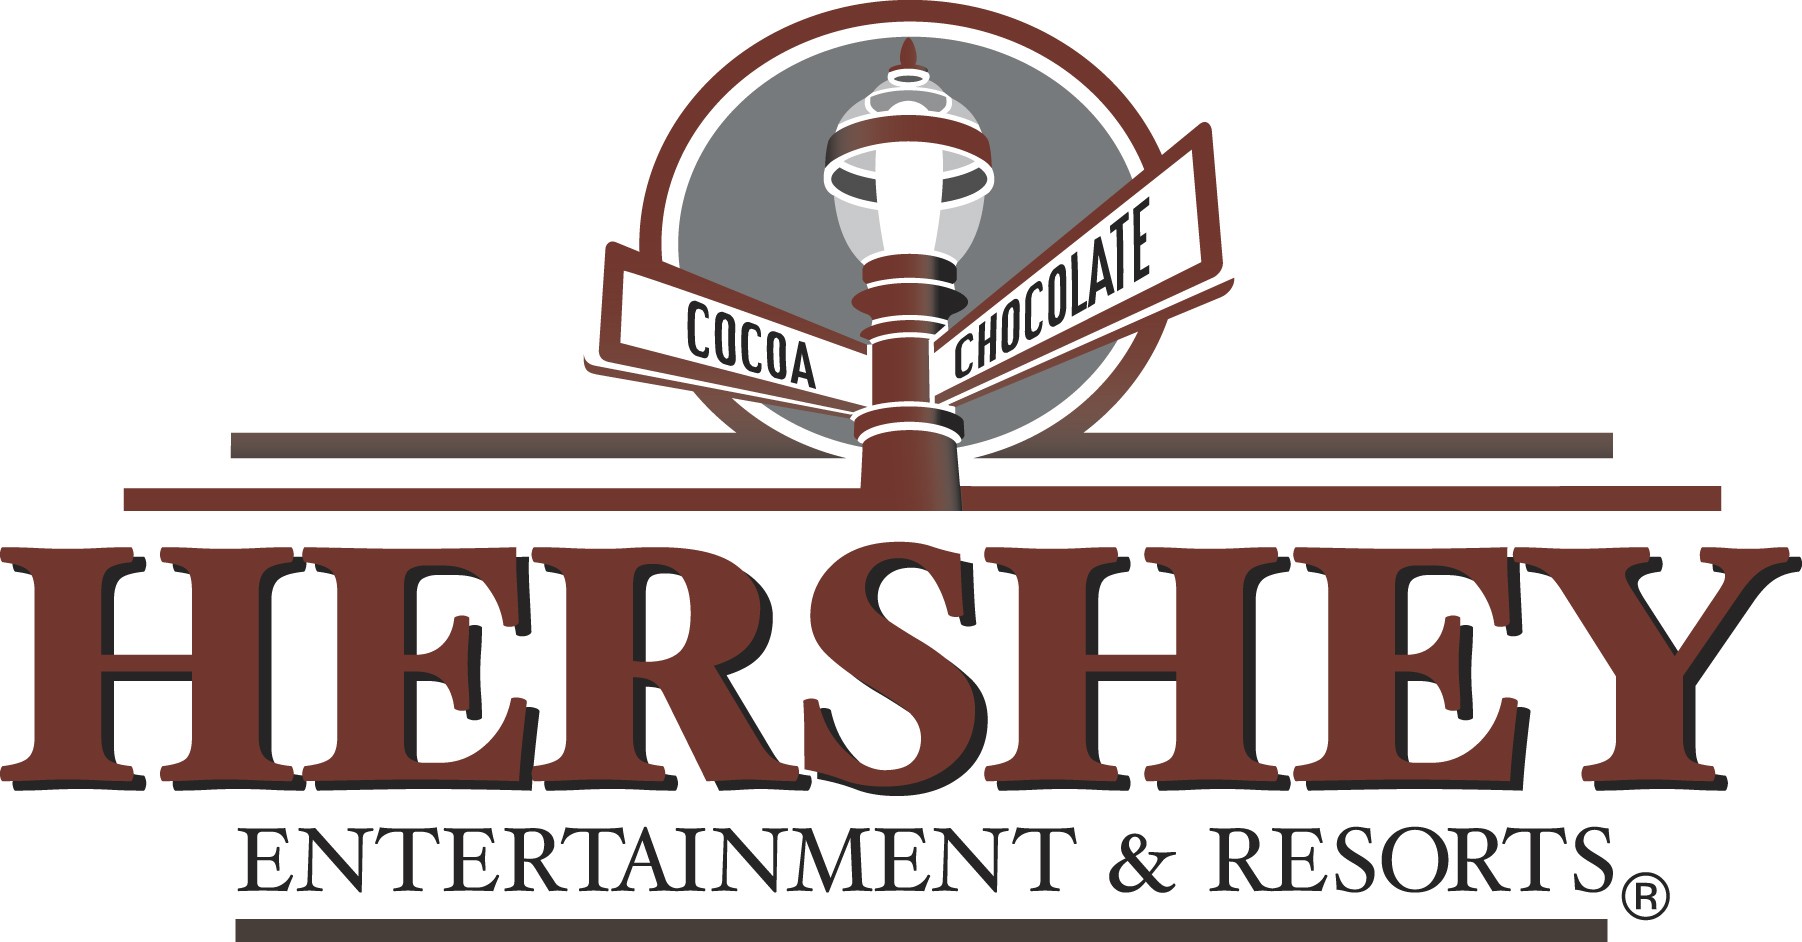 Hershey Entertainment & Resorts logo